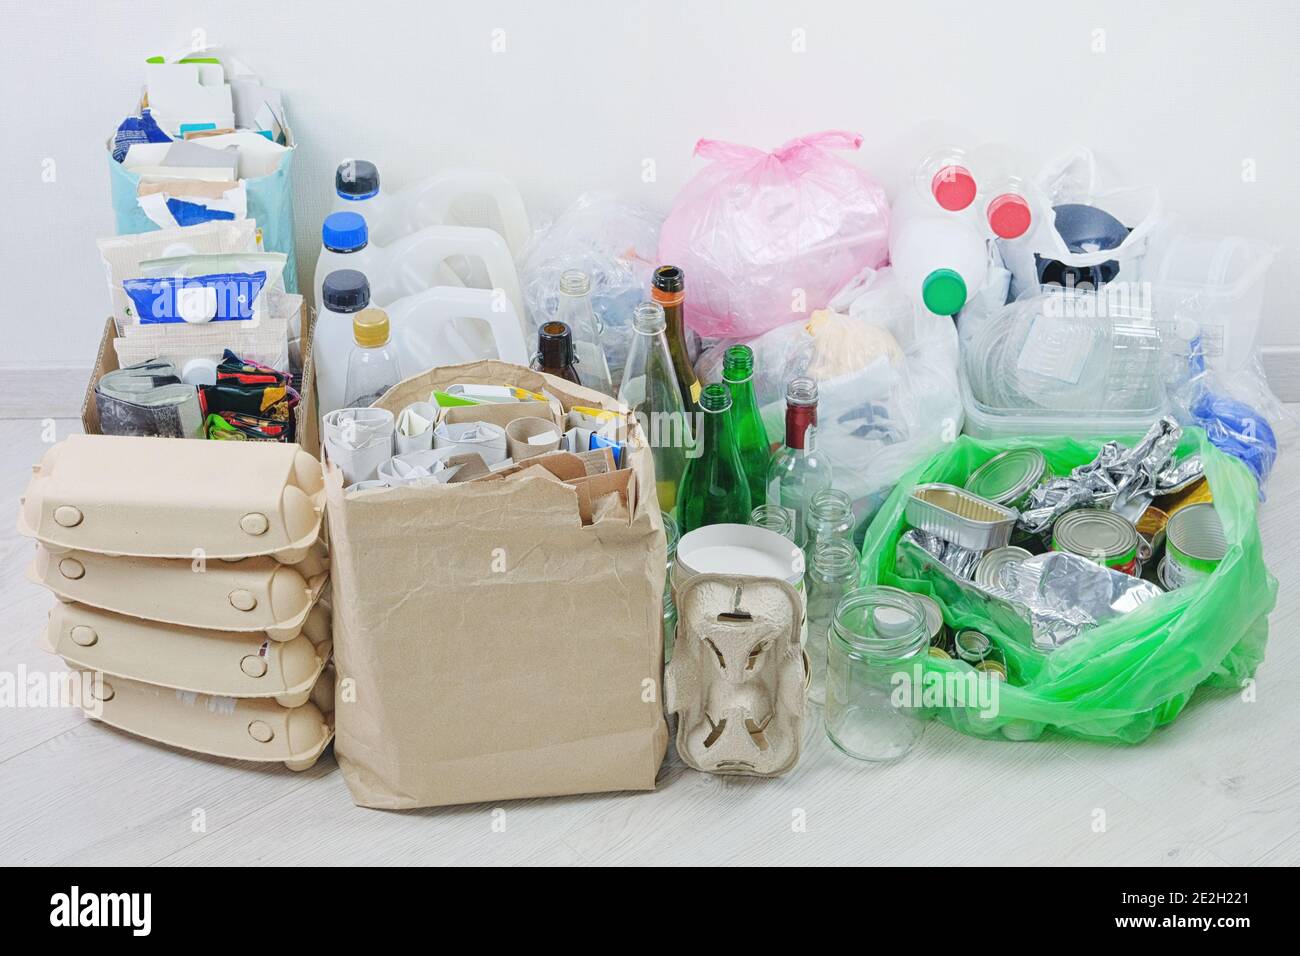 Recycelbarer Müll: Glas, verschiedene Kunststoffe, Papier, Pappe, Metall für das Recycling vorbereitet. Abfall, der recycelt werden soll. Papierkorb für Recycling und Verbesserung Th Stockfoto